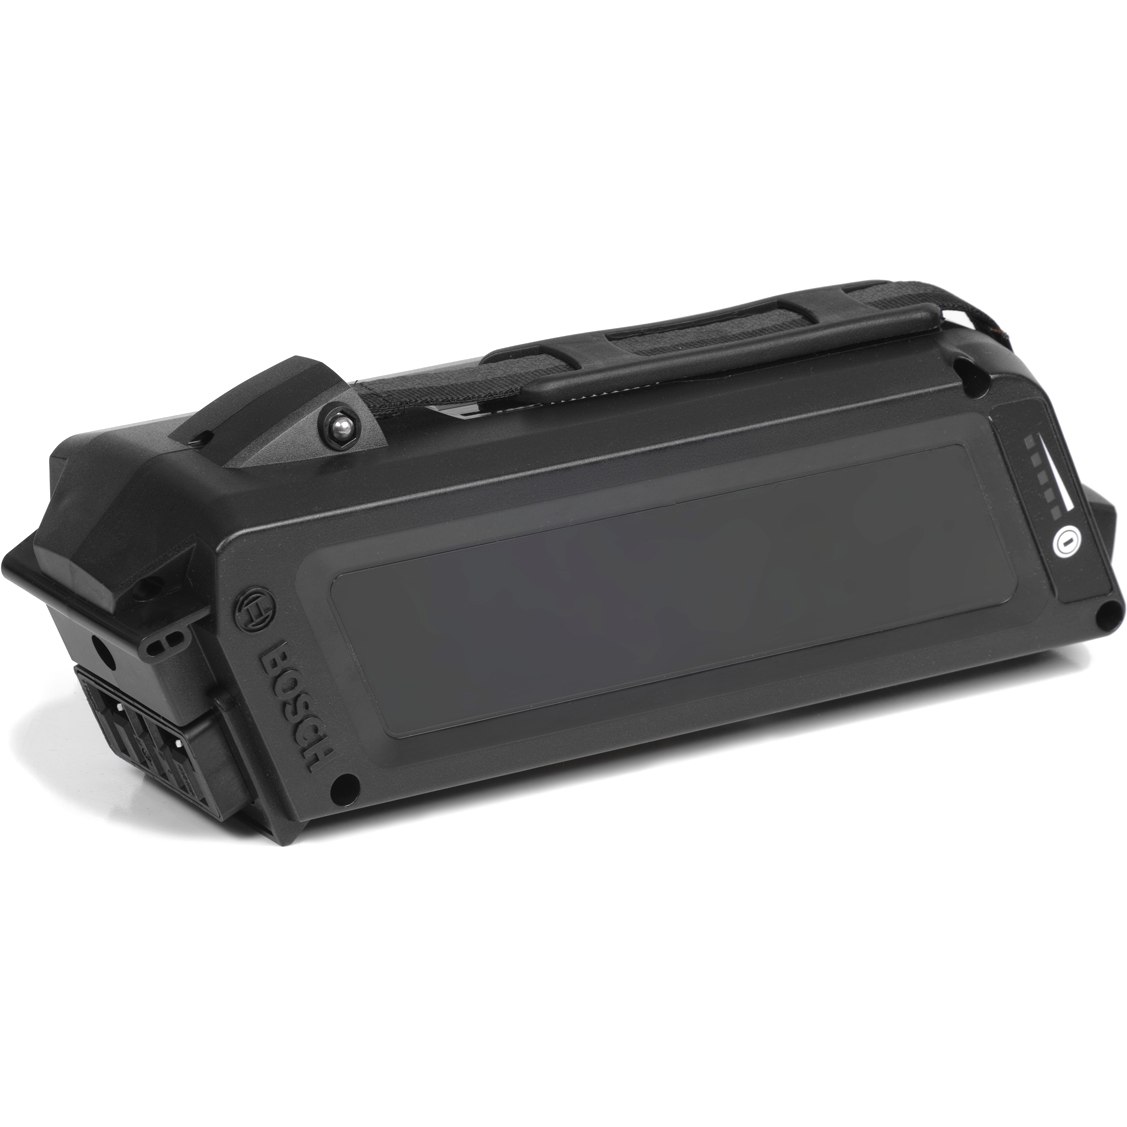 Produktbild von Bosch Powerpack Frame 400 für 2011/2012 | Classic+ Line - 0275007503 - schwarz